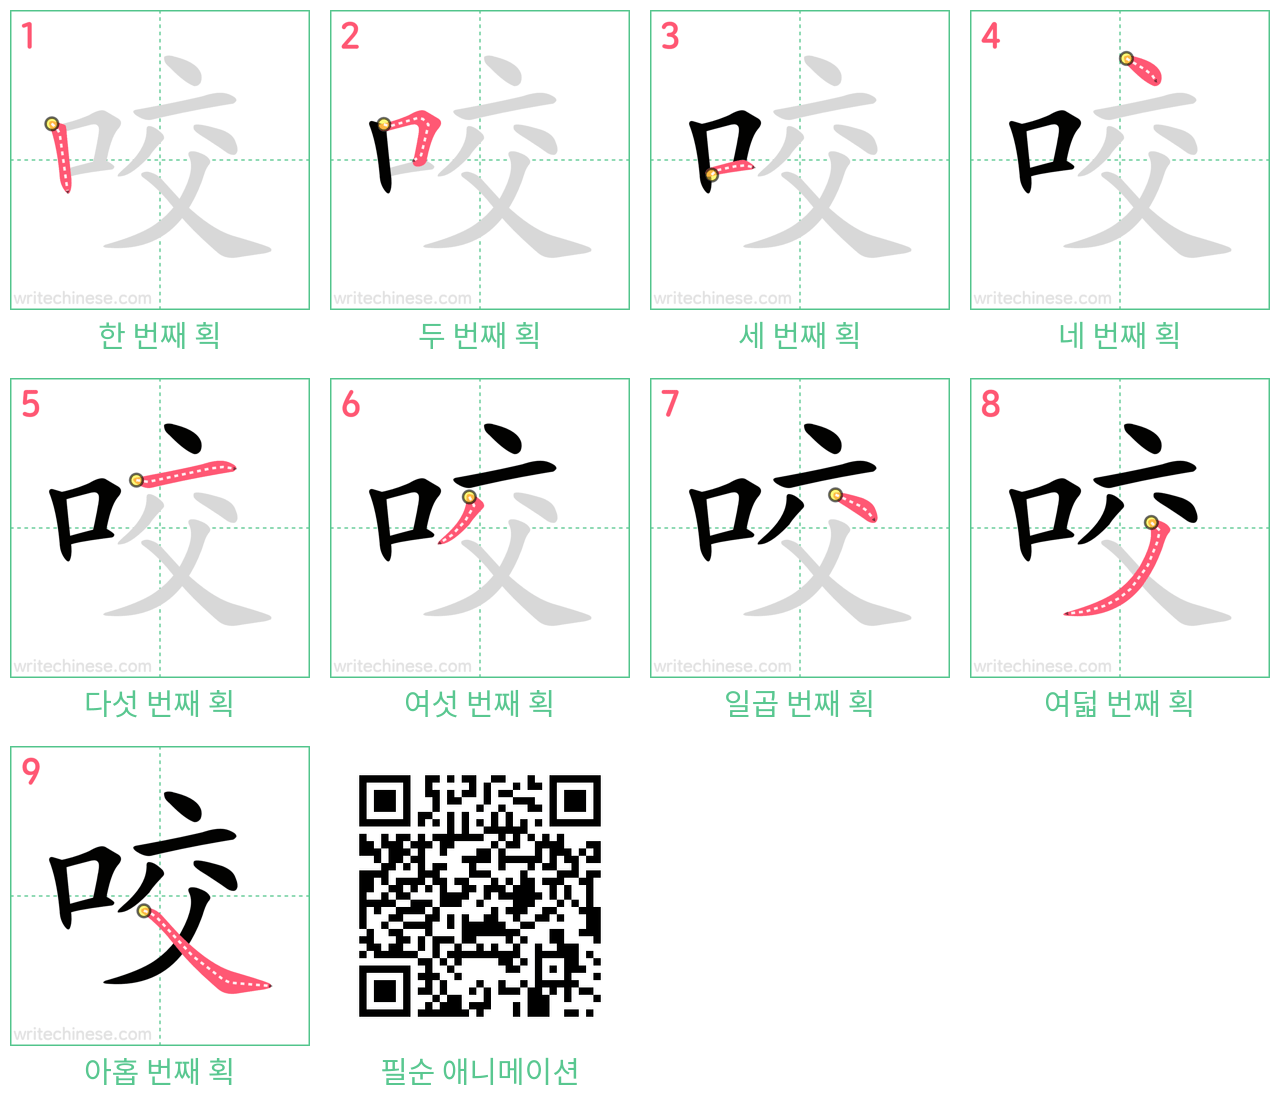 咬 step-by-step stroke order diagrams